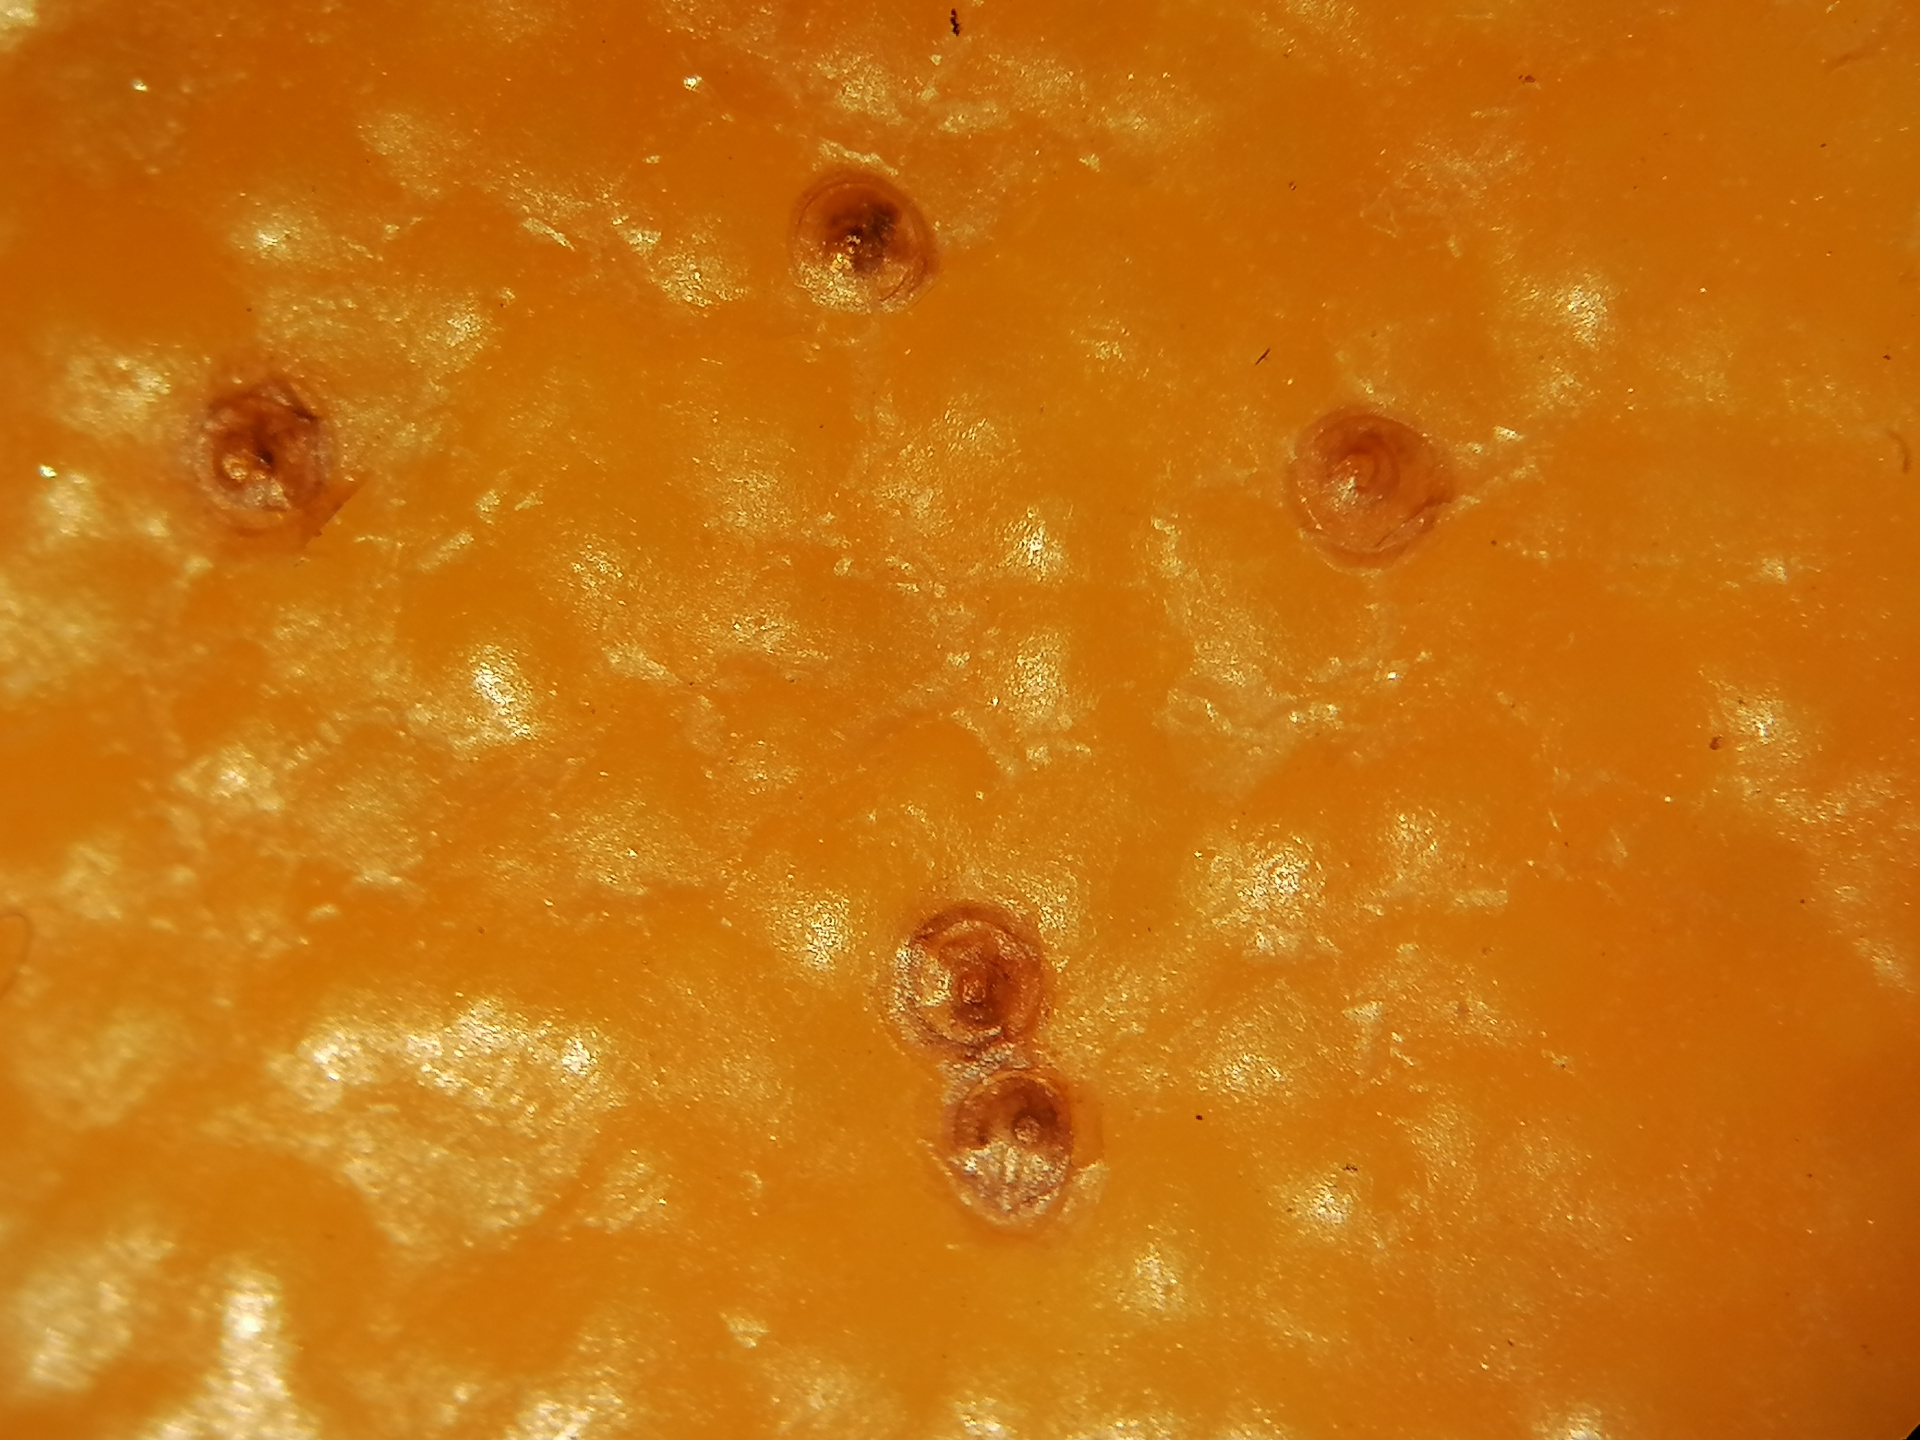 Карантинный объект выявлен в свежих апельсинах